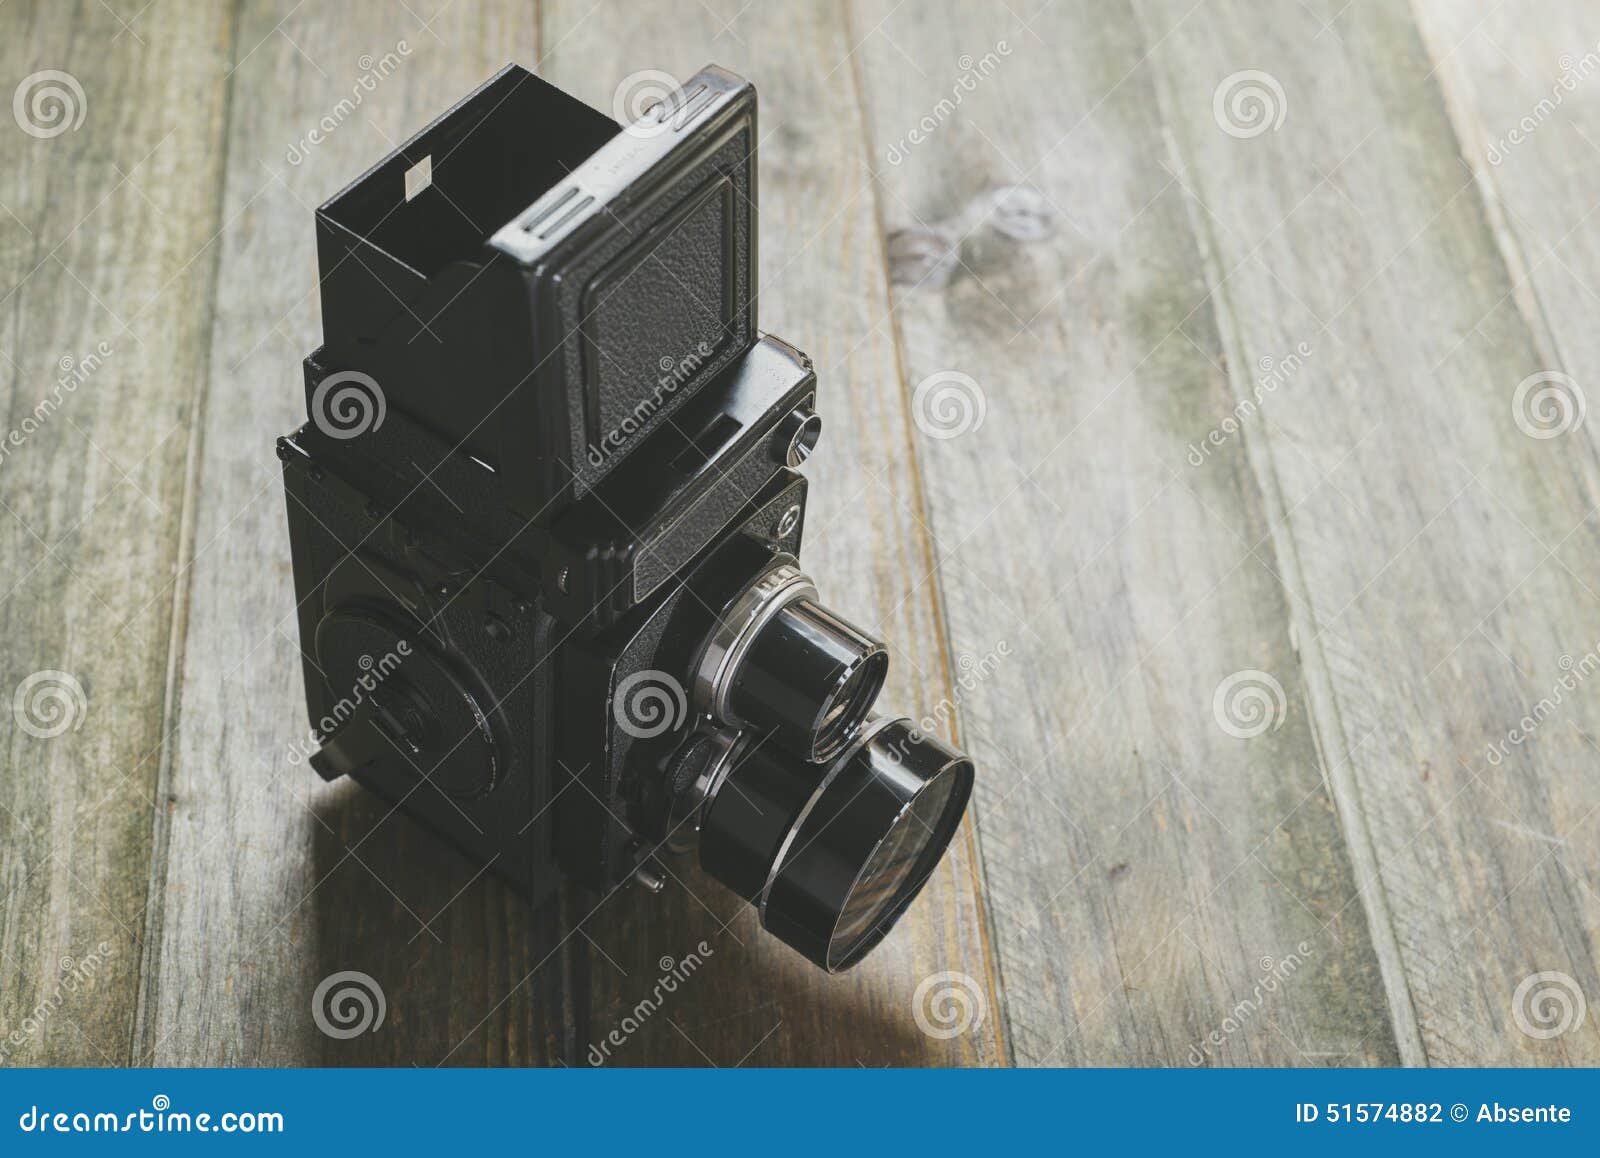 摄象机镜头反射孪生. 老牌照相机特写镜头;中等格式6x6 cm